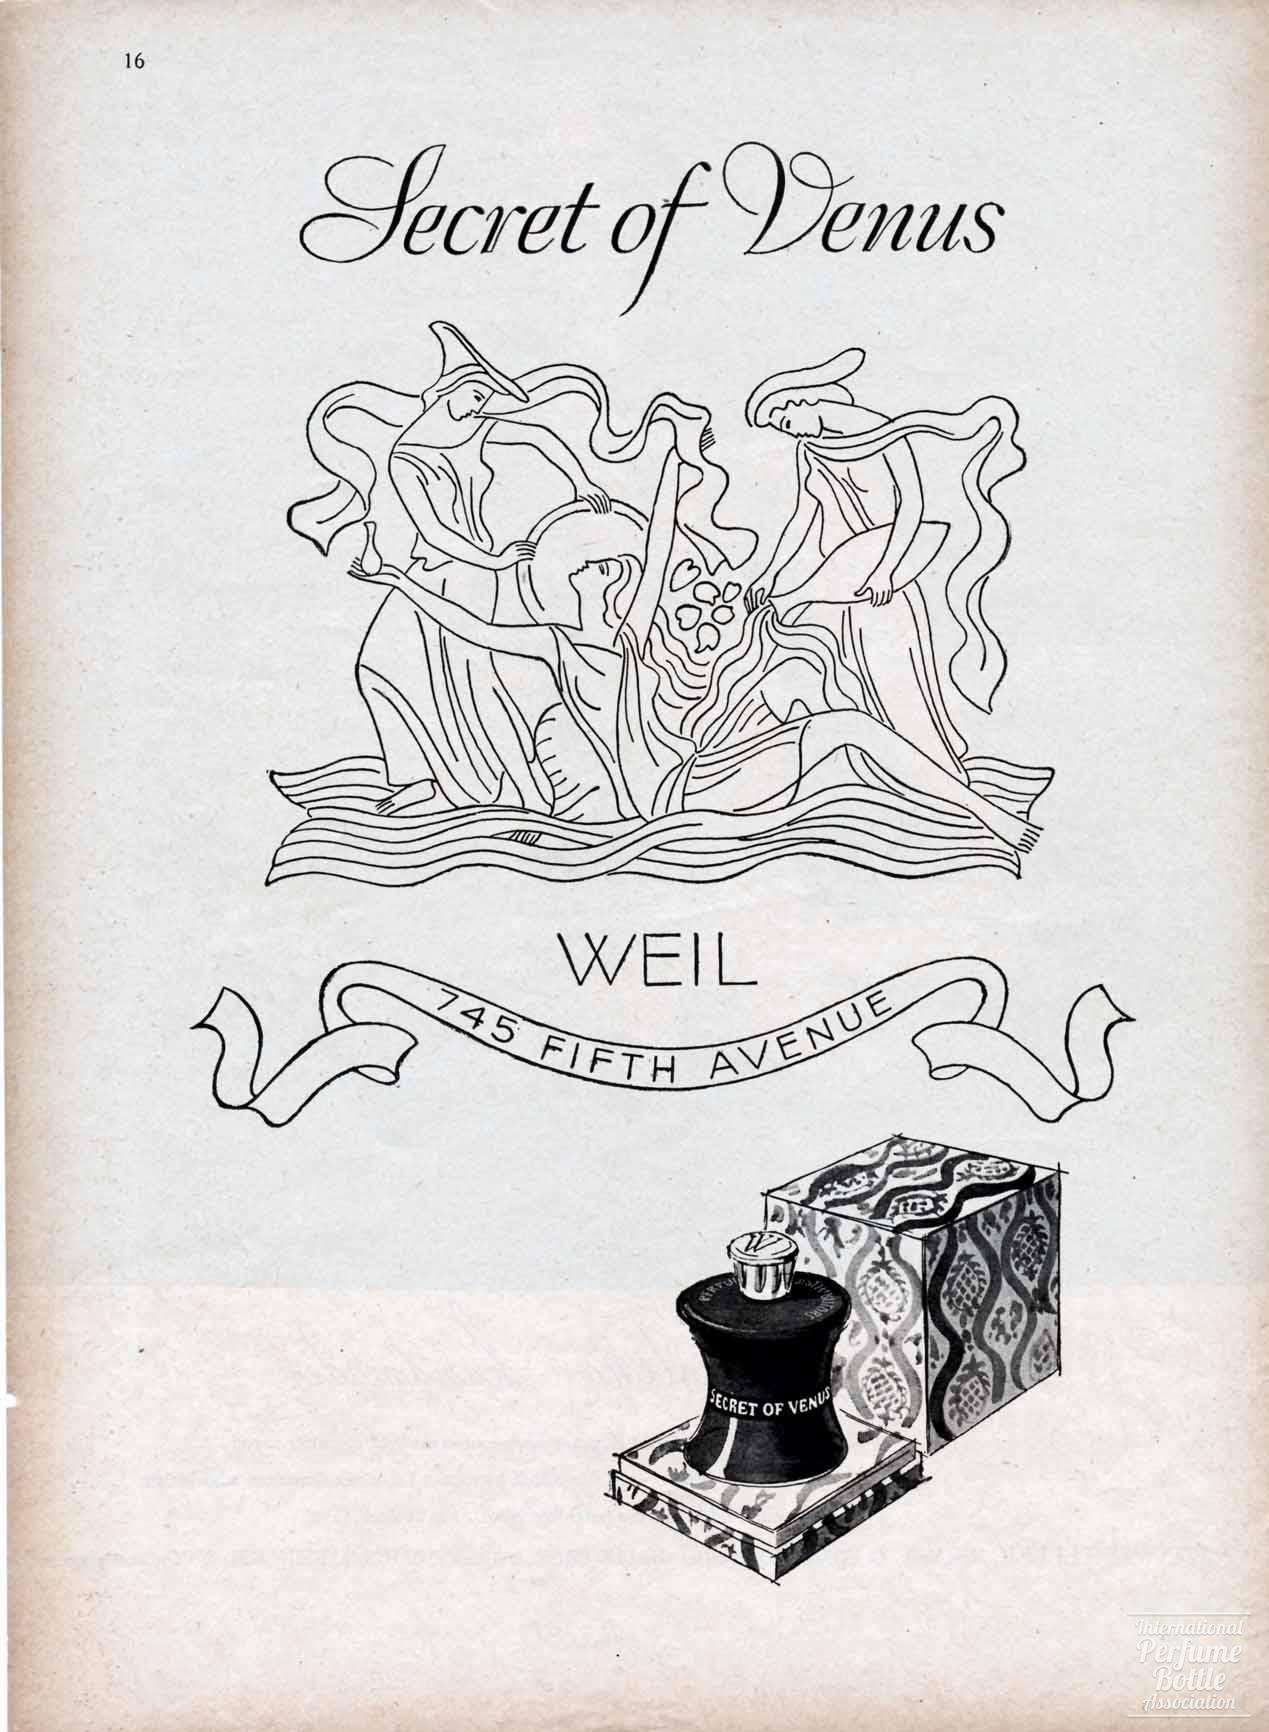 "Secret of Venus" by Weil Advertisement - 1946